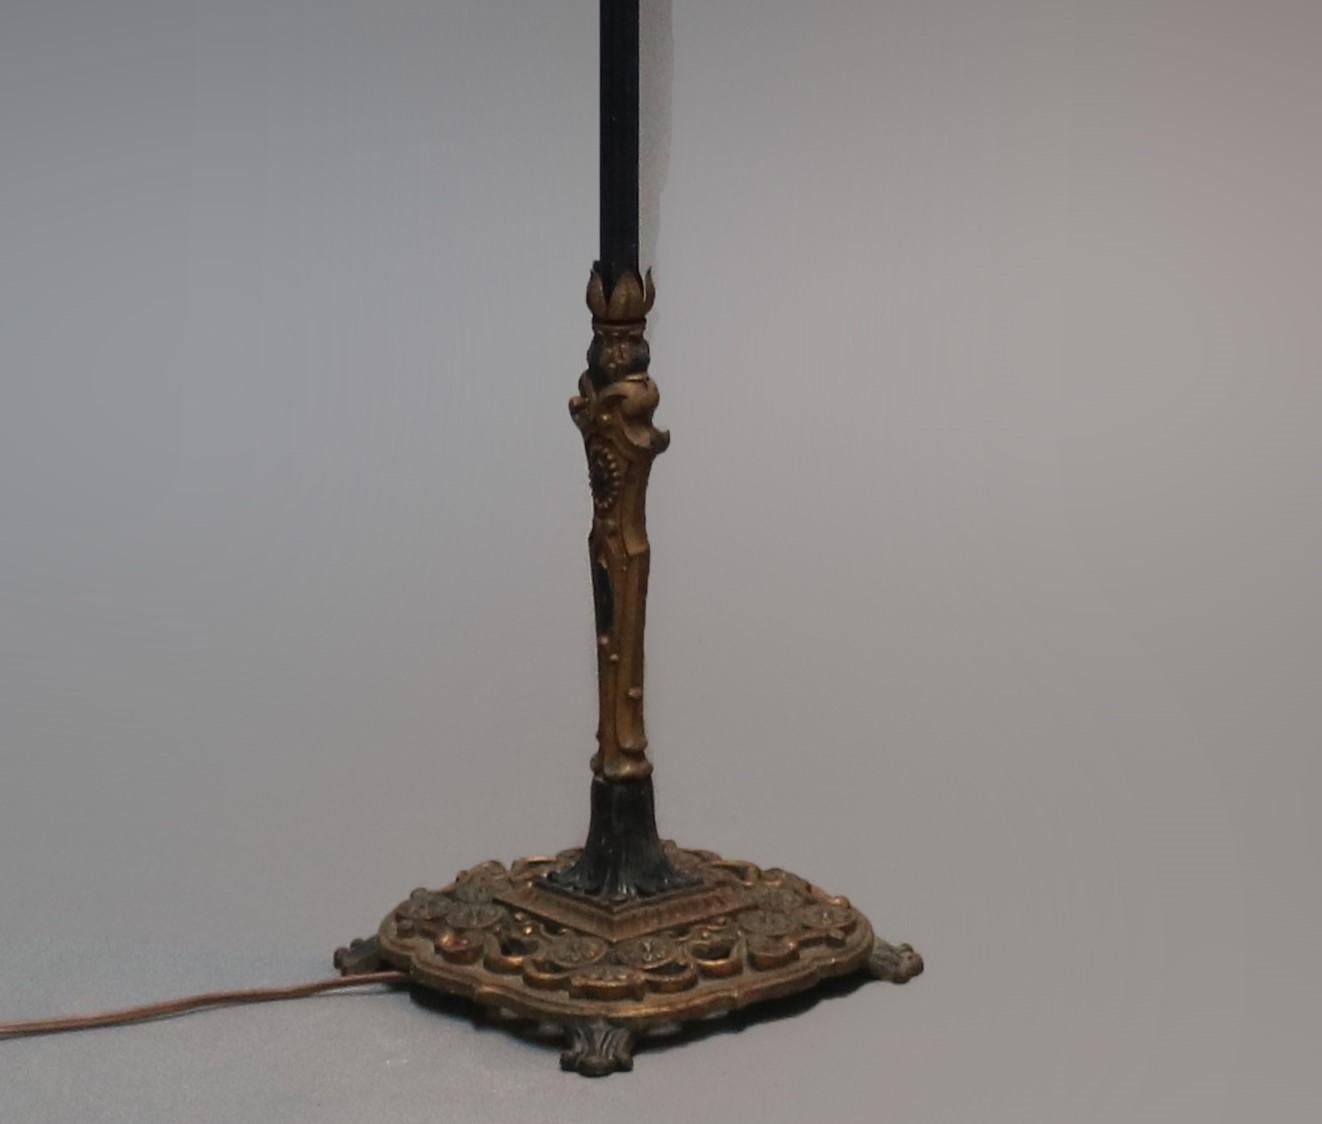 Cast Antique English Scroll Form Goose Neck Bridge Floor Lamp, circa 1920